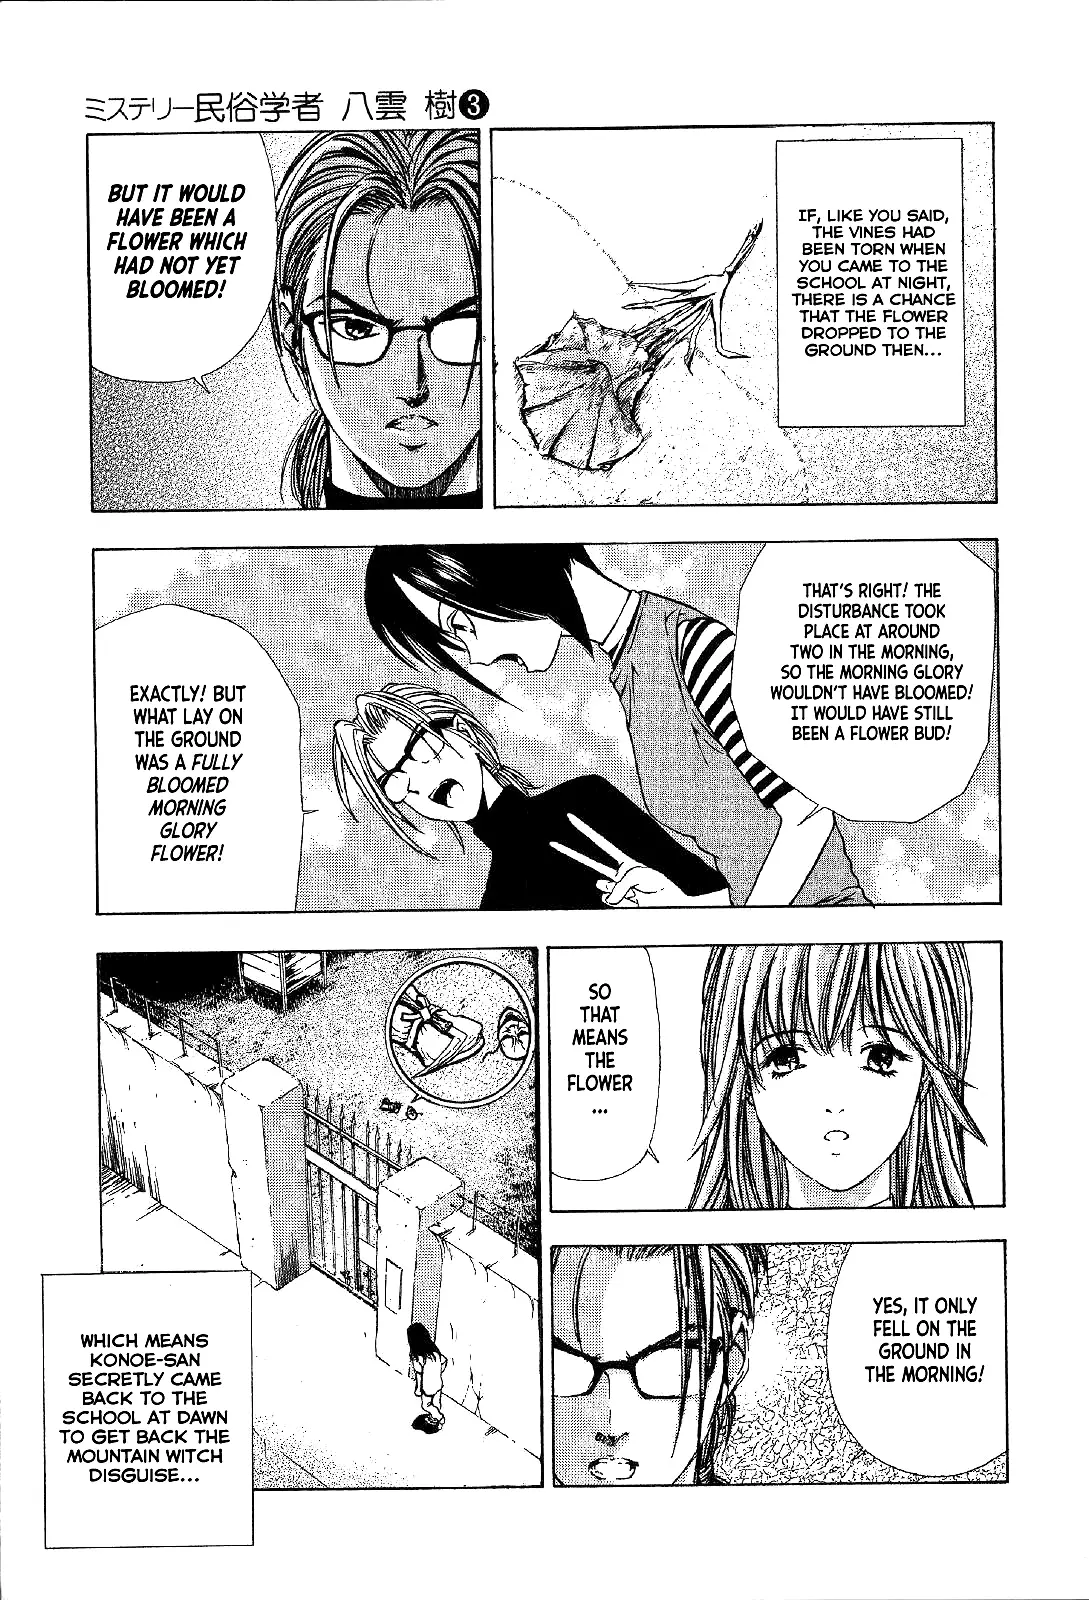 Mystery Minzoku Gakusha Yakumo Itsuki - 19 page 19